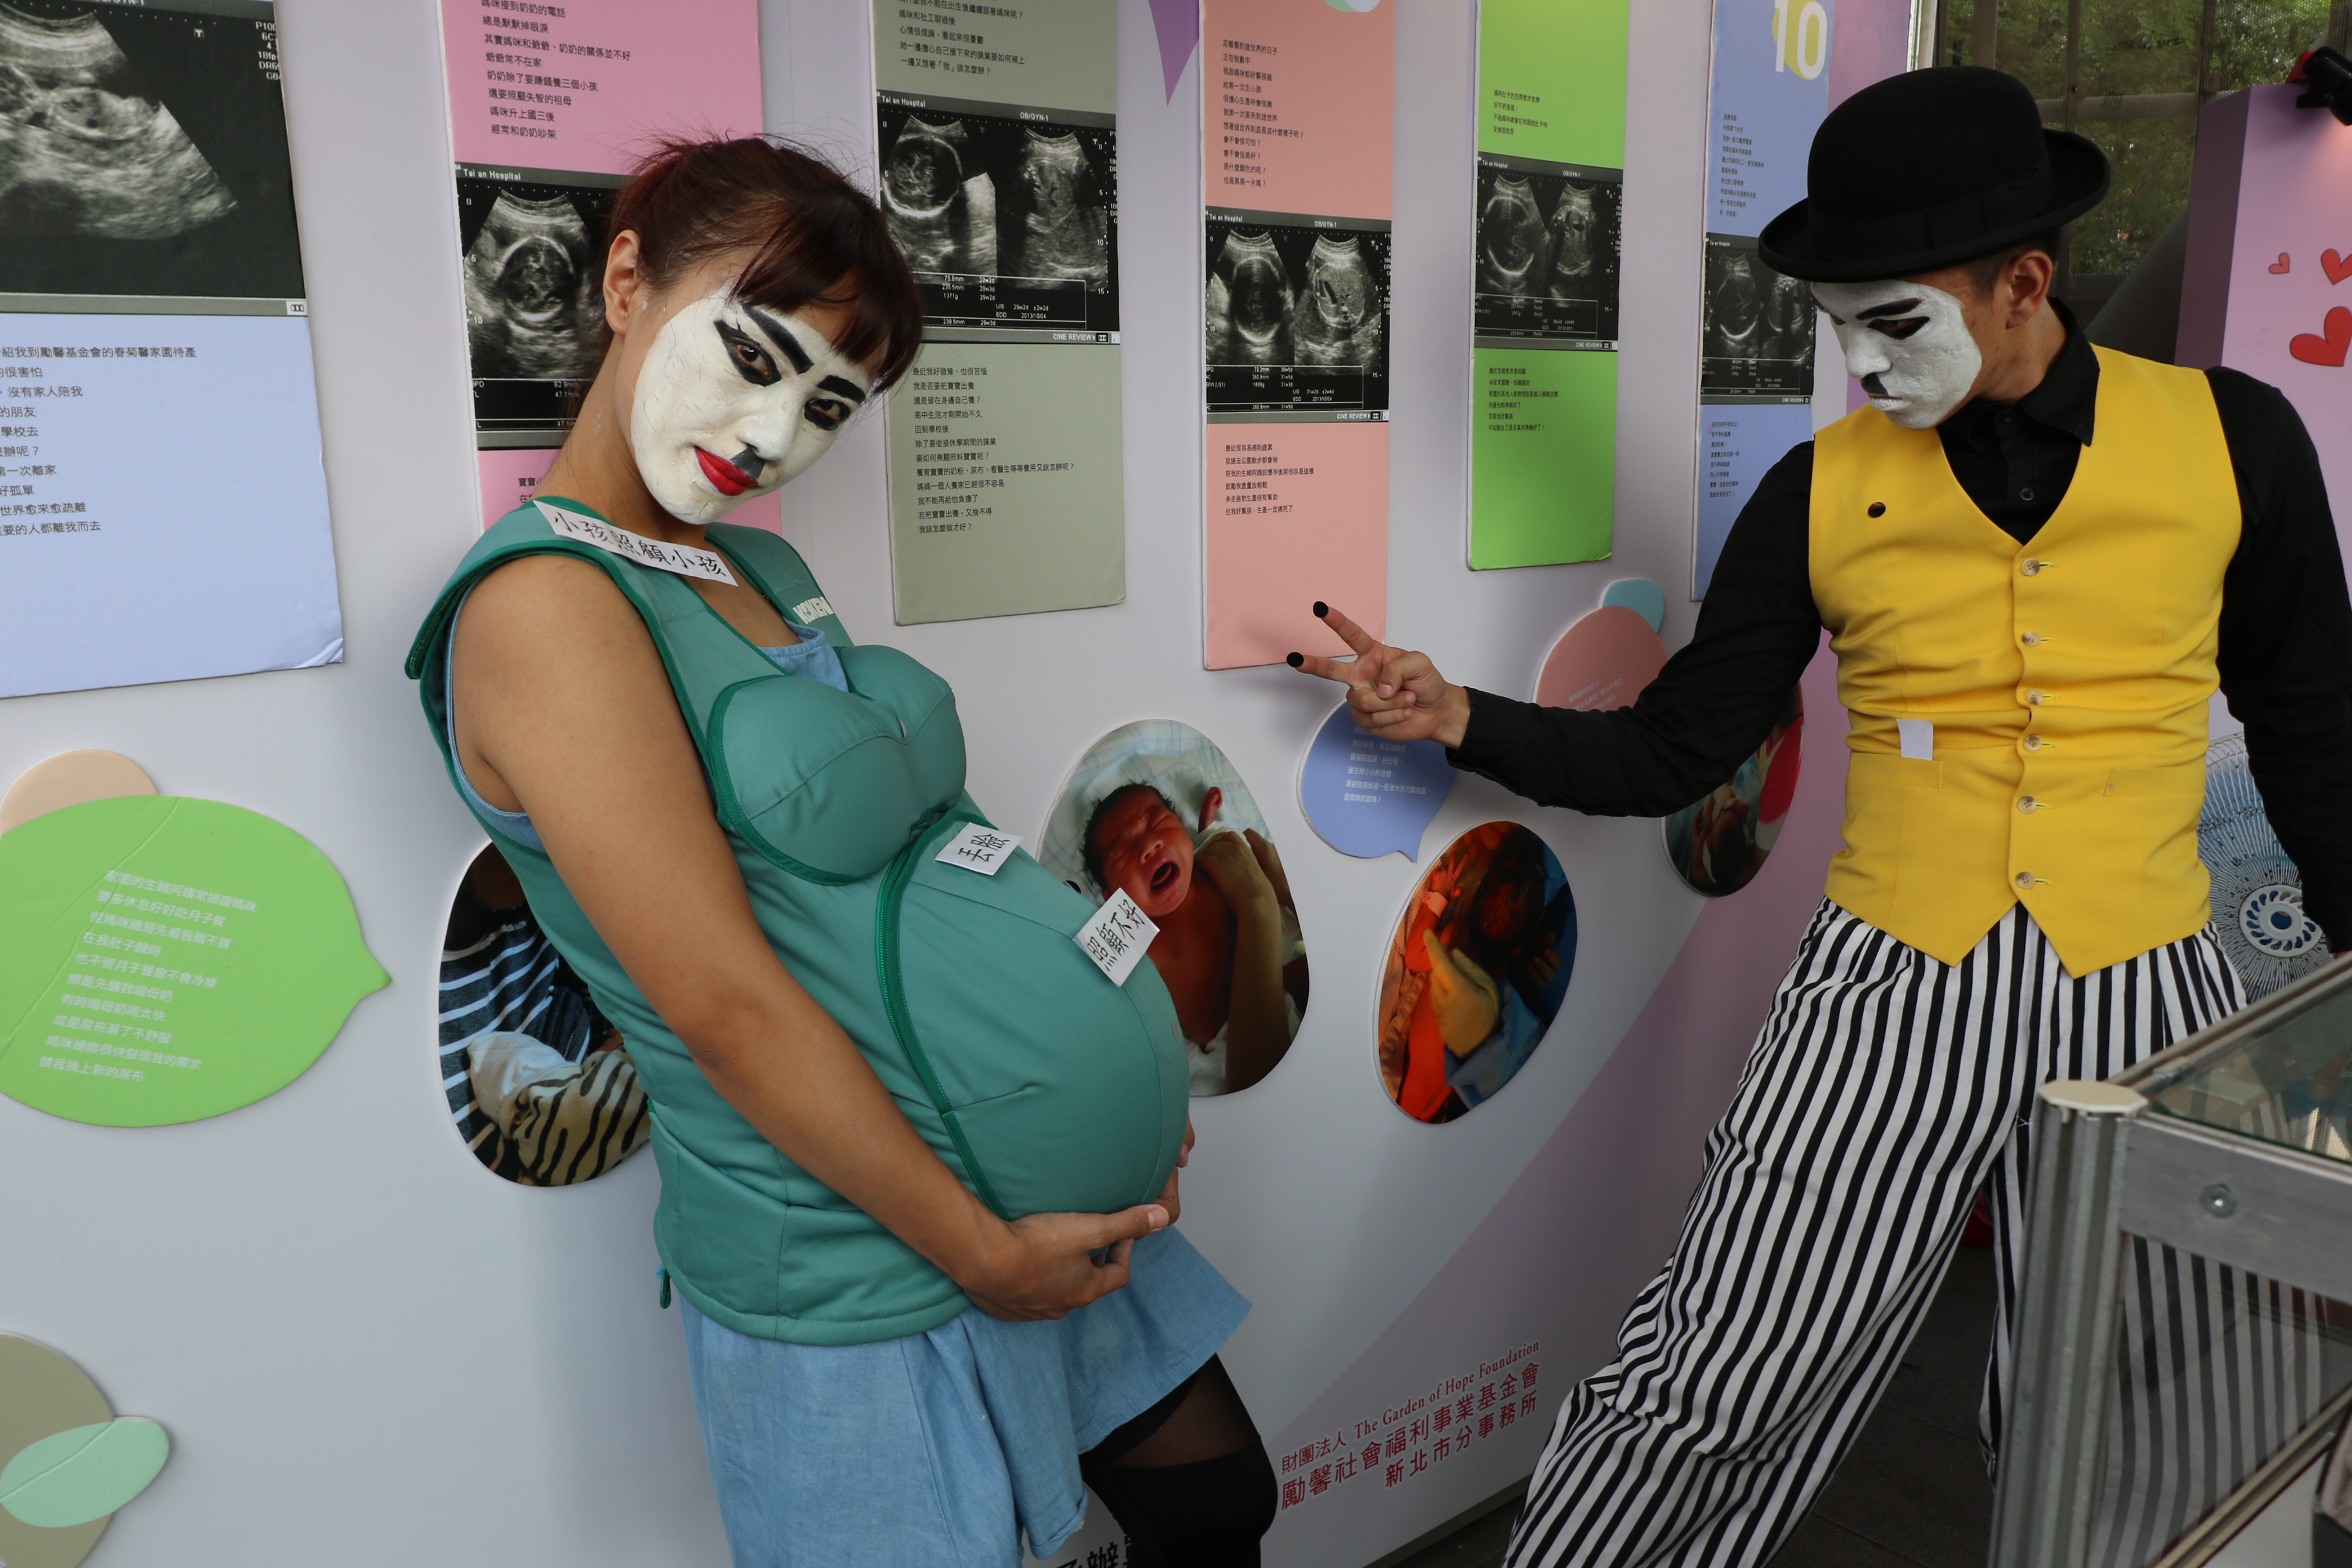 新北市政府與勵馨基金會在府中捷運站出口宣導預防小爸媽活動  少女懷孕常受旁人指指點點